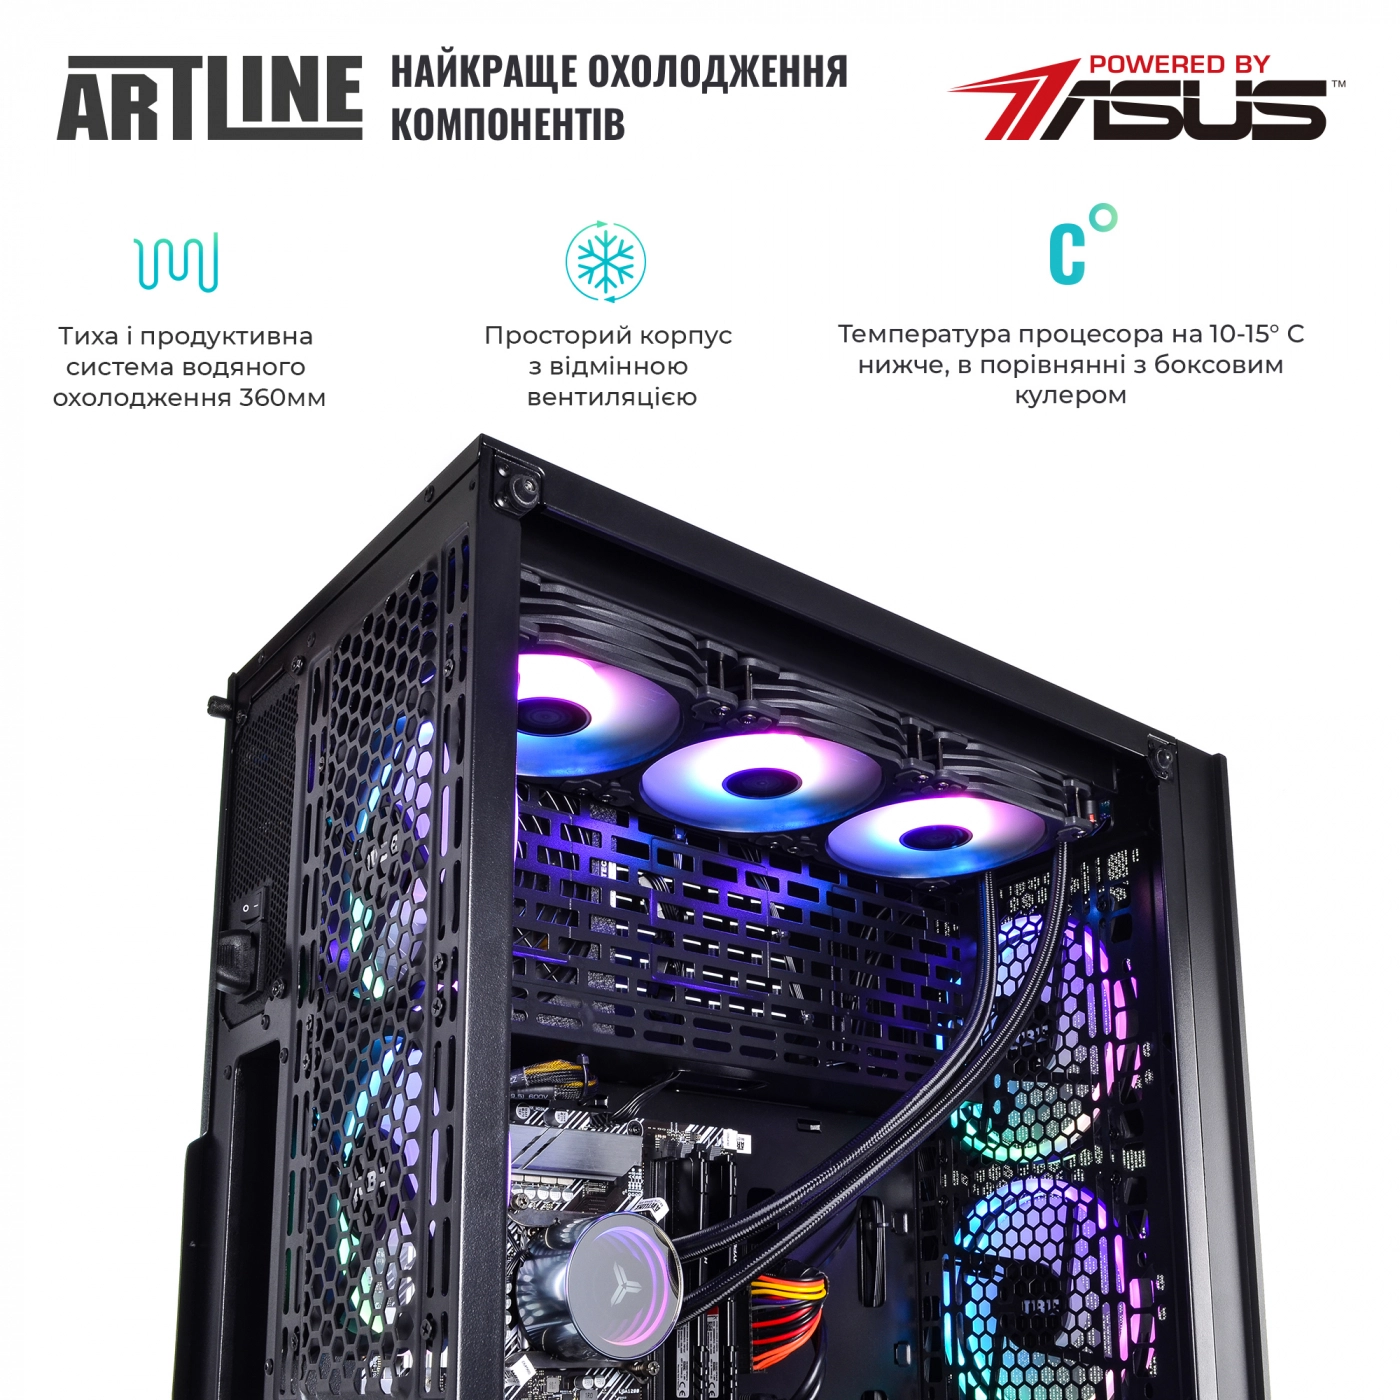 Купить Компьютер ARTLINE Gaming X99v50 - фото 4